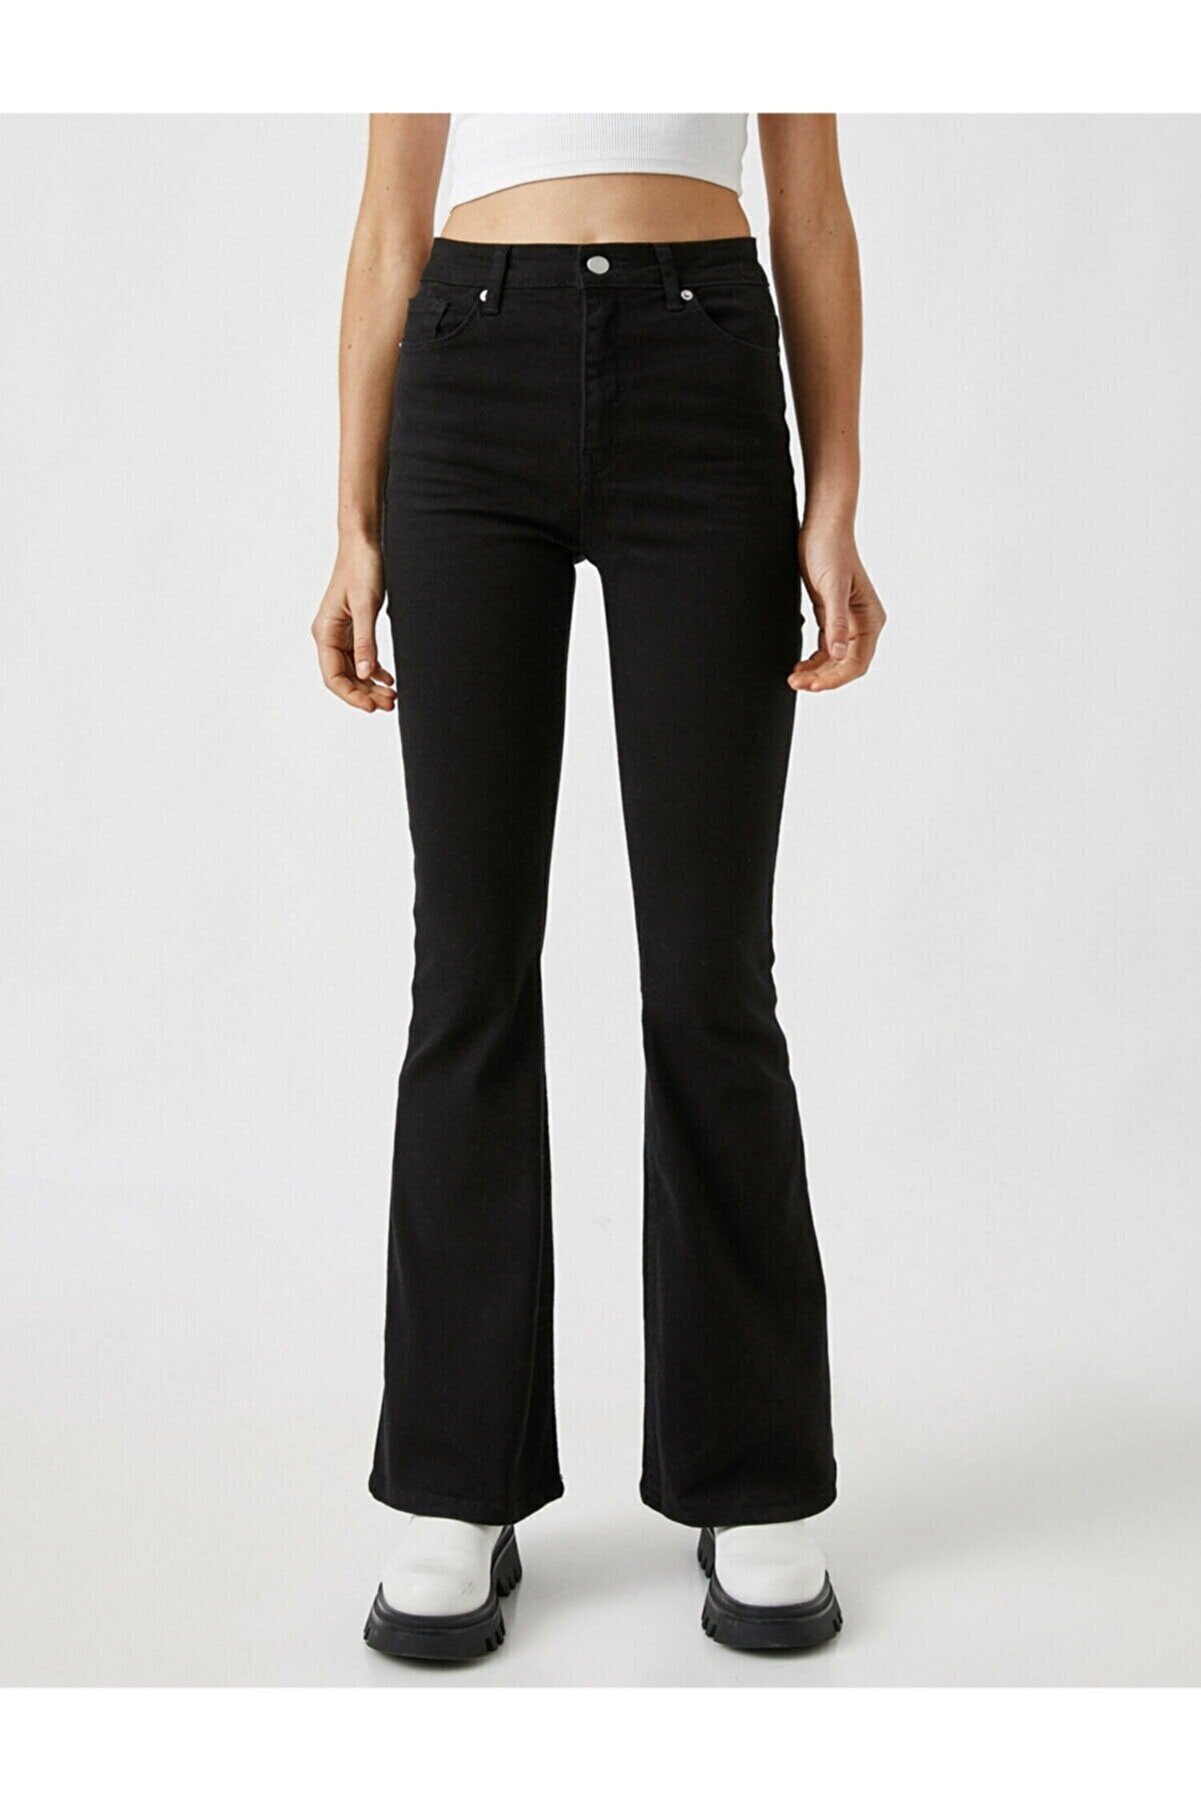 Vis a Vis Sementa Kadın Siyah Solmayan Yüksel Bel Likralı Toparlayıcı Ispanyol Jeans Pantalon